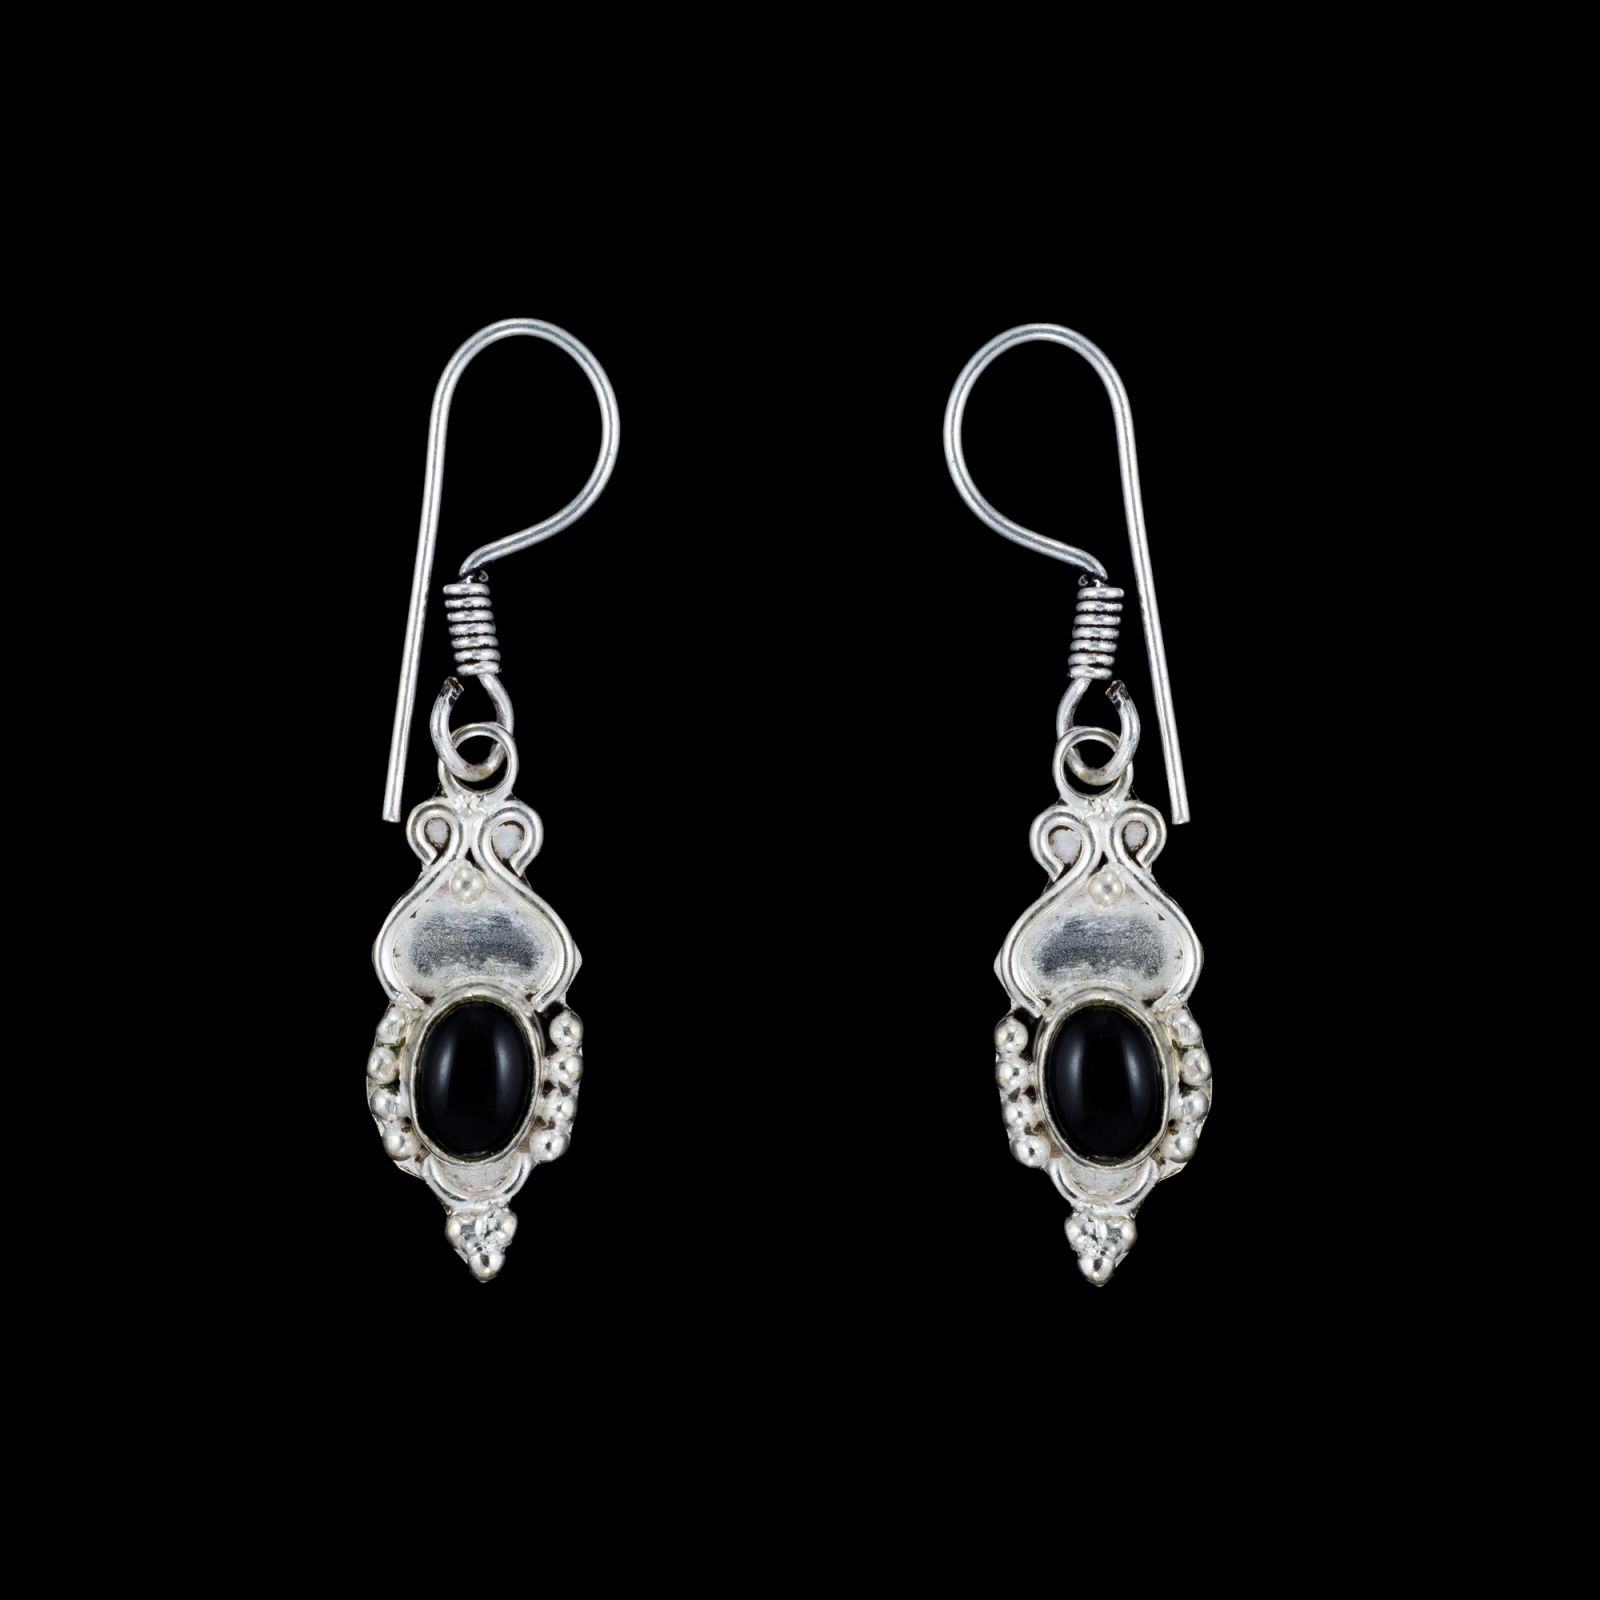 German silver earrings Putrim - Onyx India